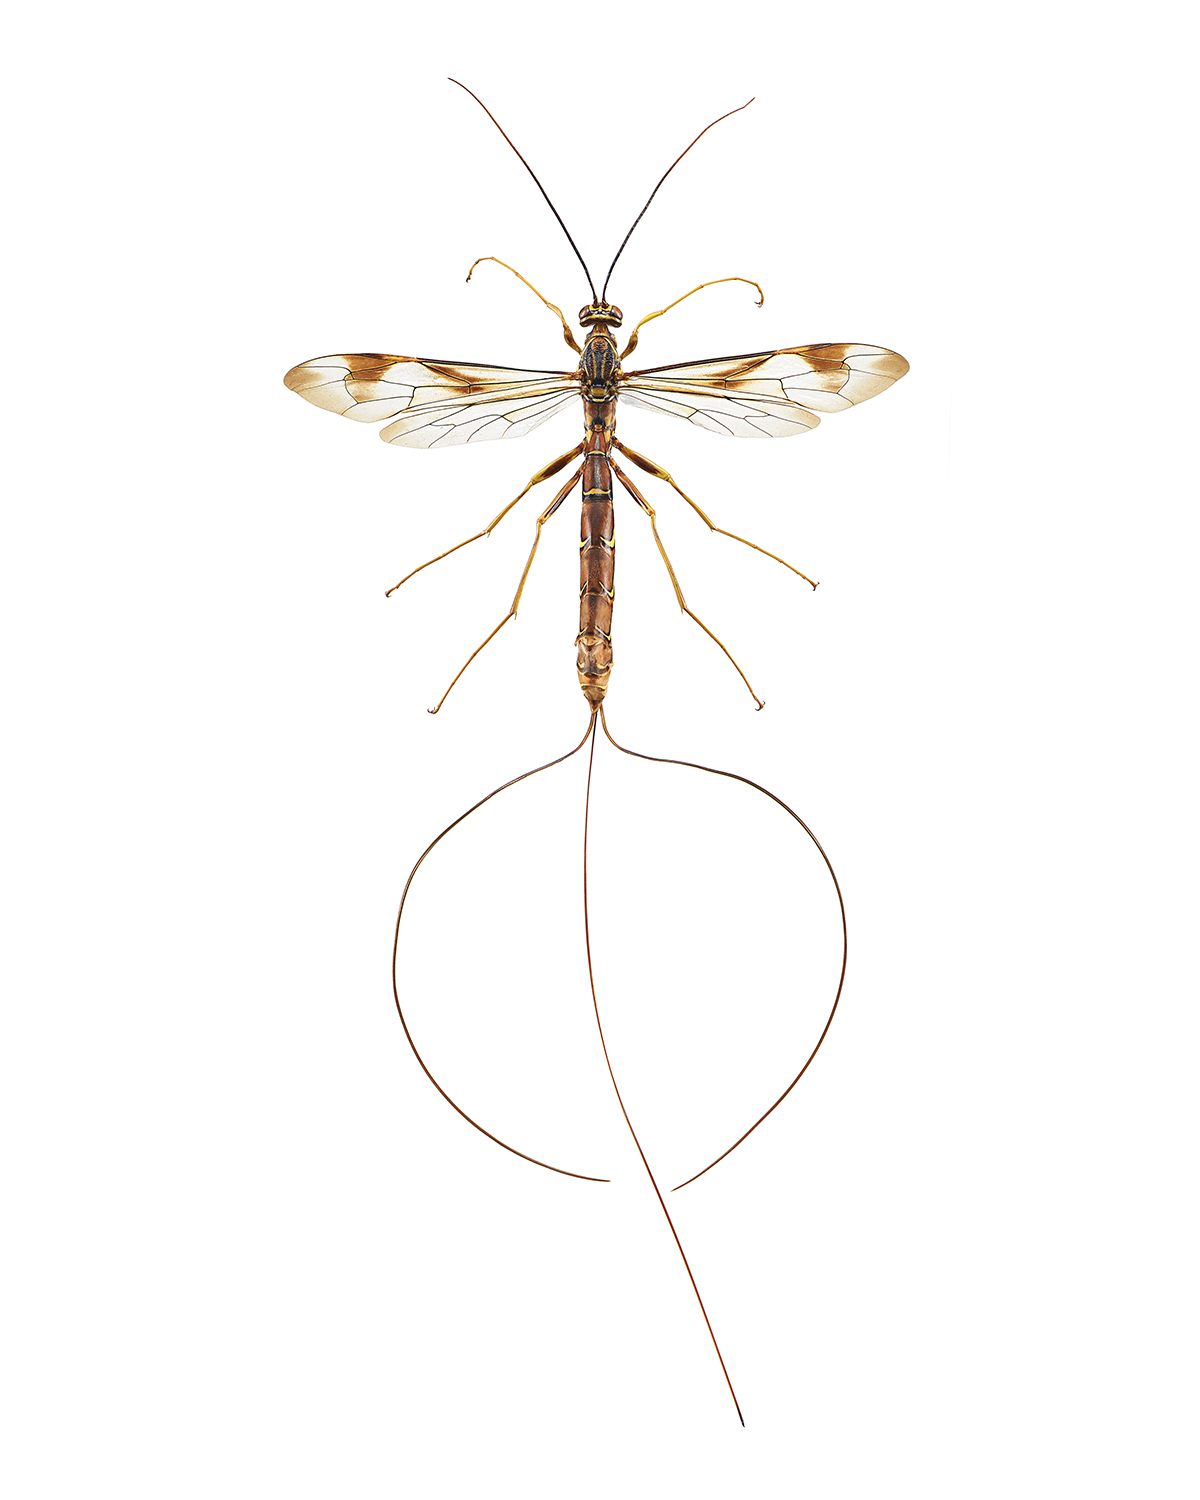 Predator Wasp, Megarhyssa ichneumon macrurus